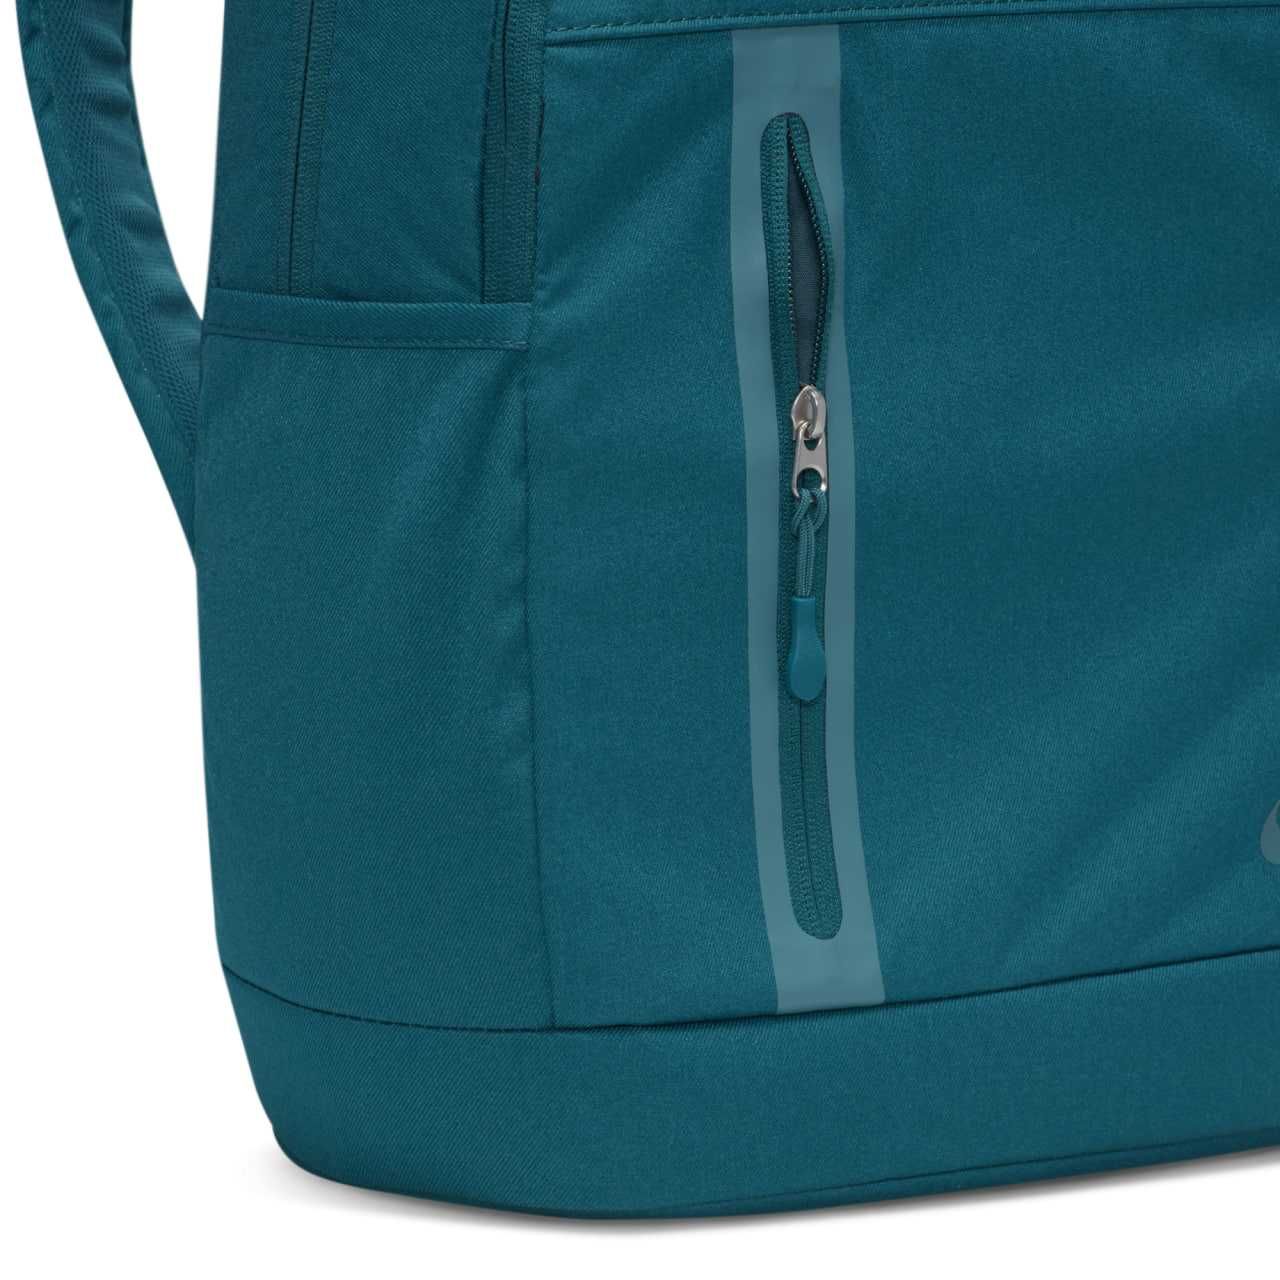 Рюкзак Nike Premium Backpack Jordan > Оригінал! Акція! < (DN2555-381)